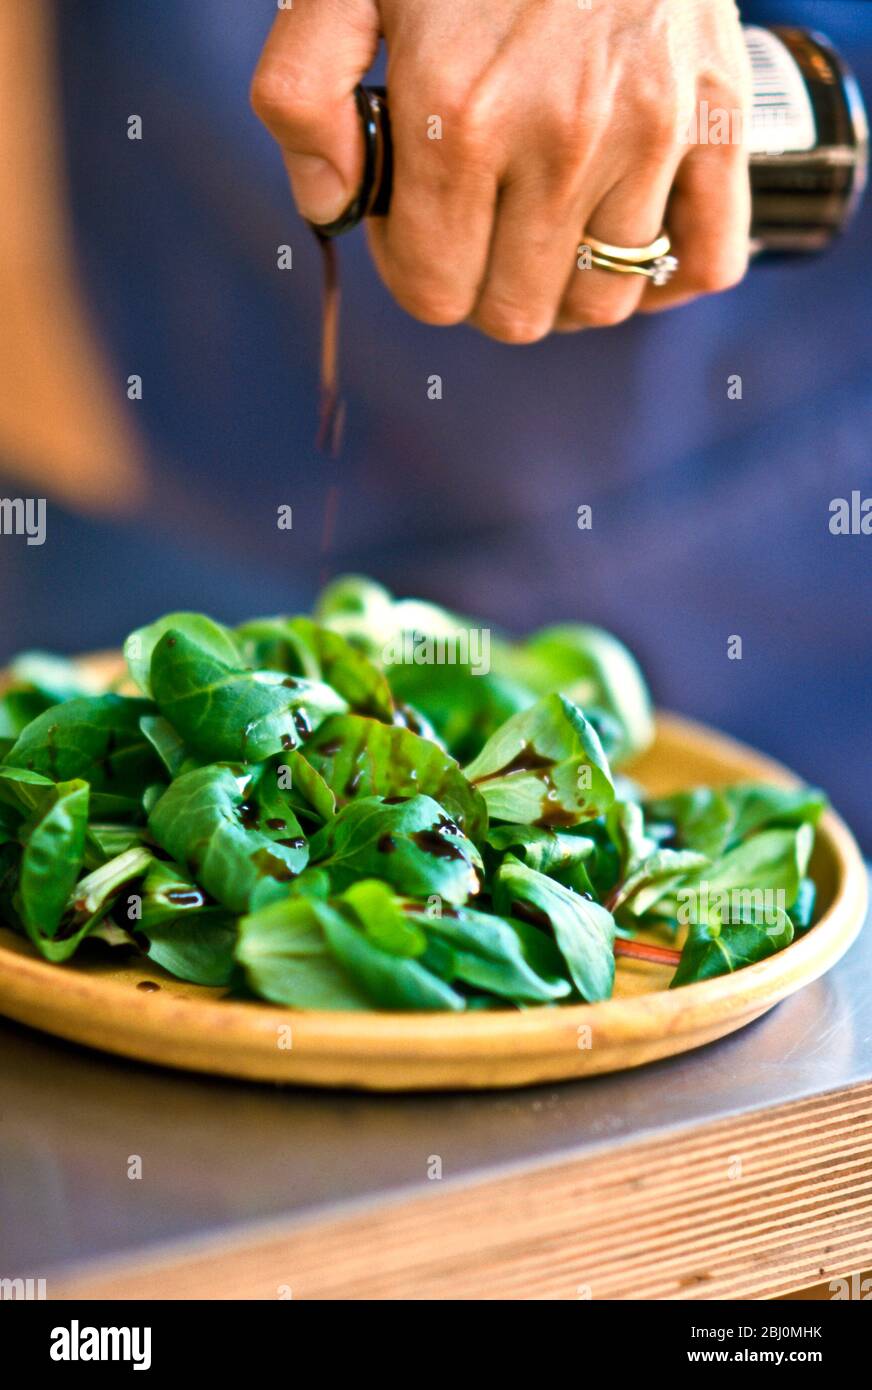 Drizzling balsamic vinegar onto lamb's lettuce in pottery dish. - Stock Photo